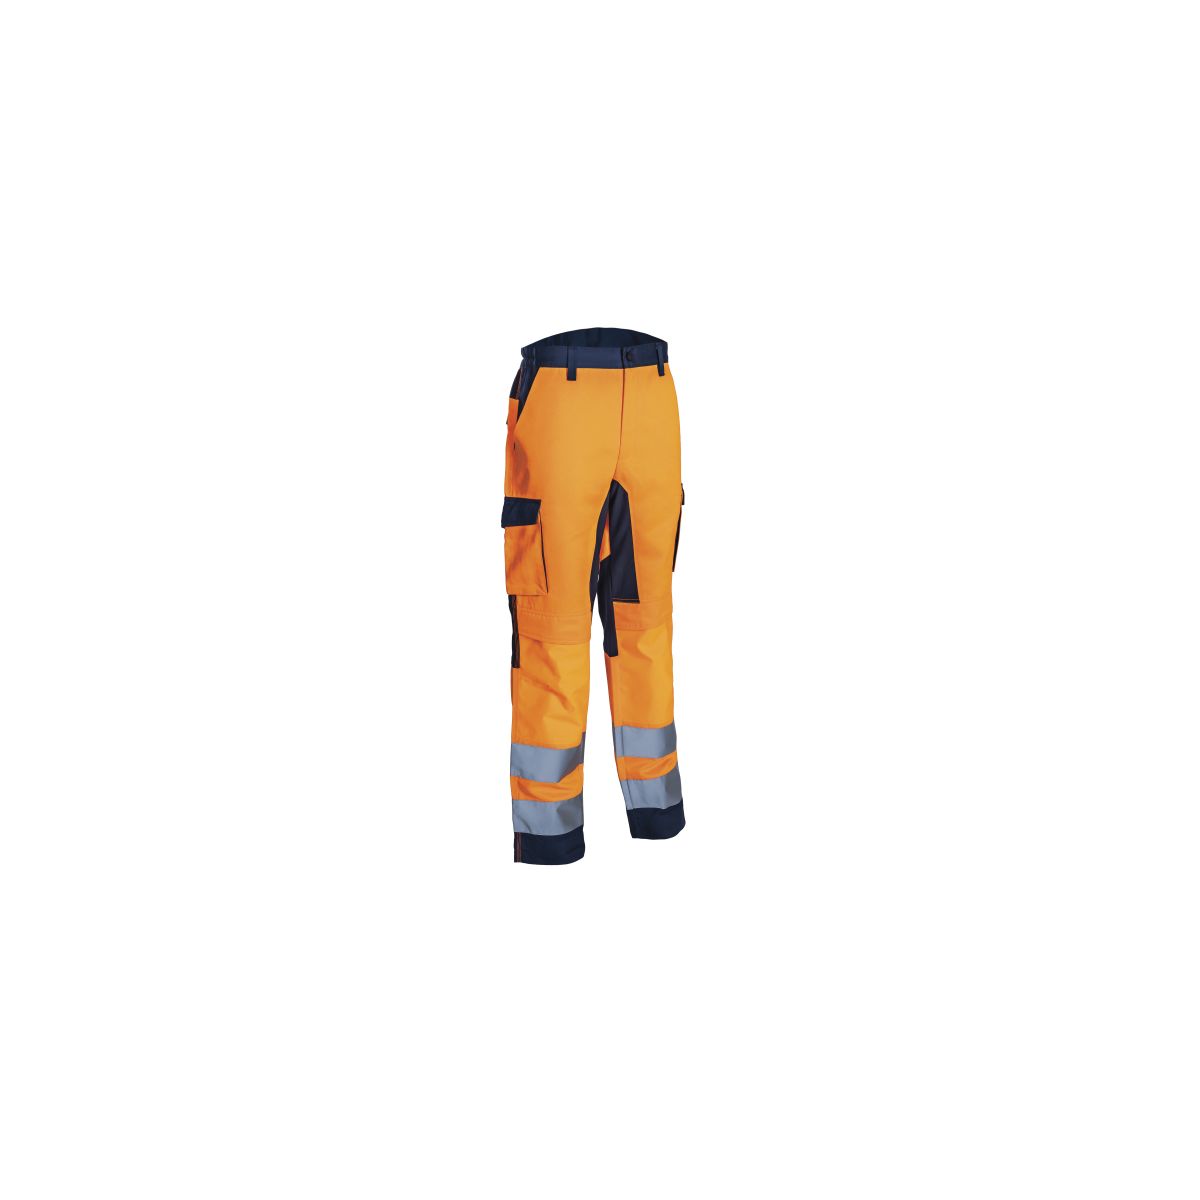 Pantalon haute visibilité HIBANA Orange et Marine - Coverguard - Taille 4XL 0